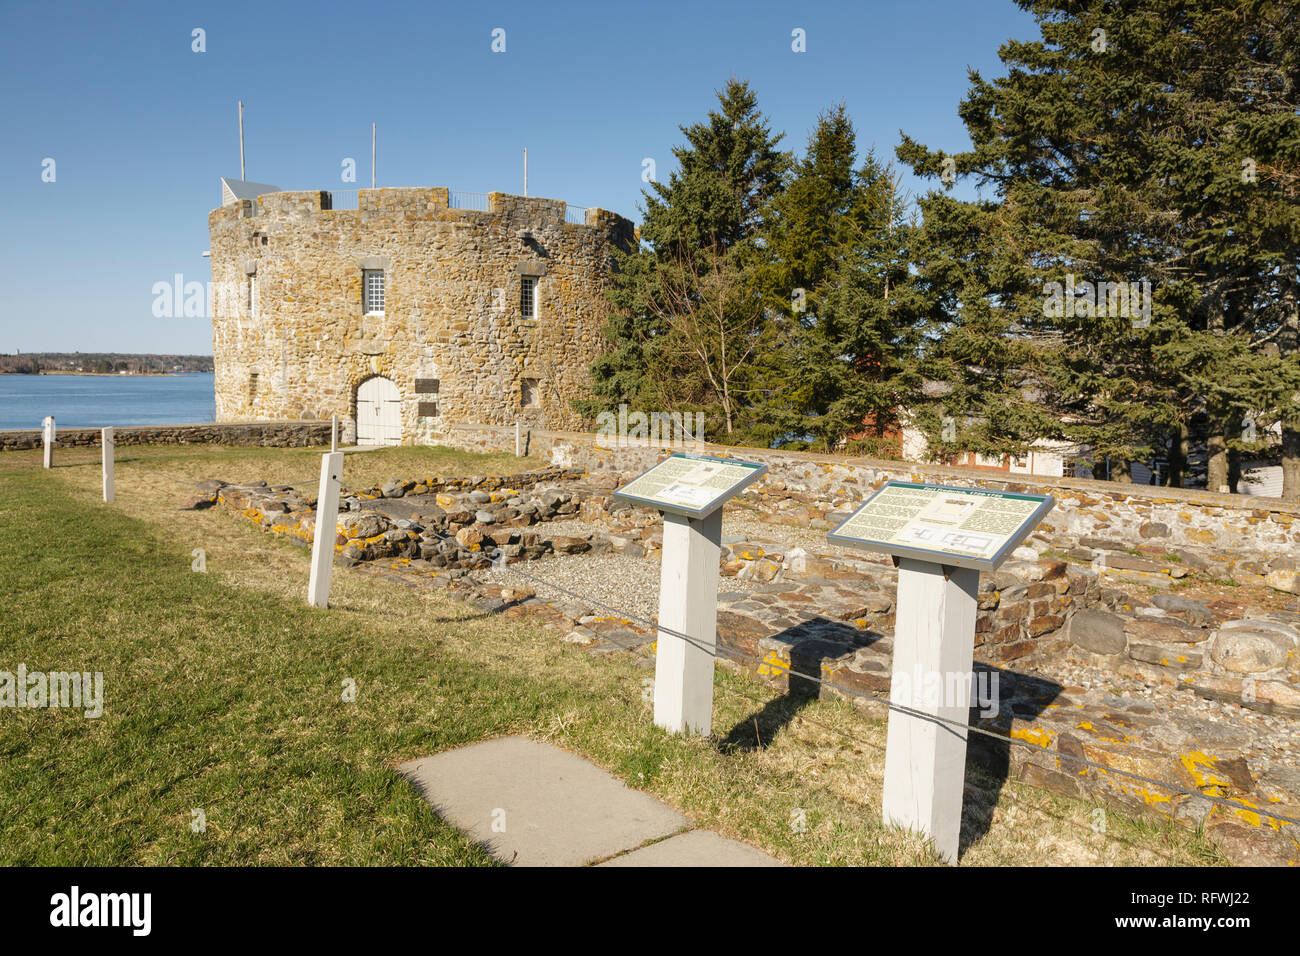 Fort William Henry dans le village de New Harbour dans la ville de Bristol, dans le Maine. Situé sur la côte du Maine, ce fort a été construit en 1692. Banque D'Images